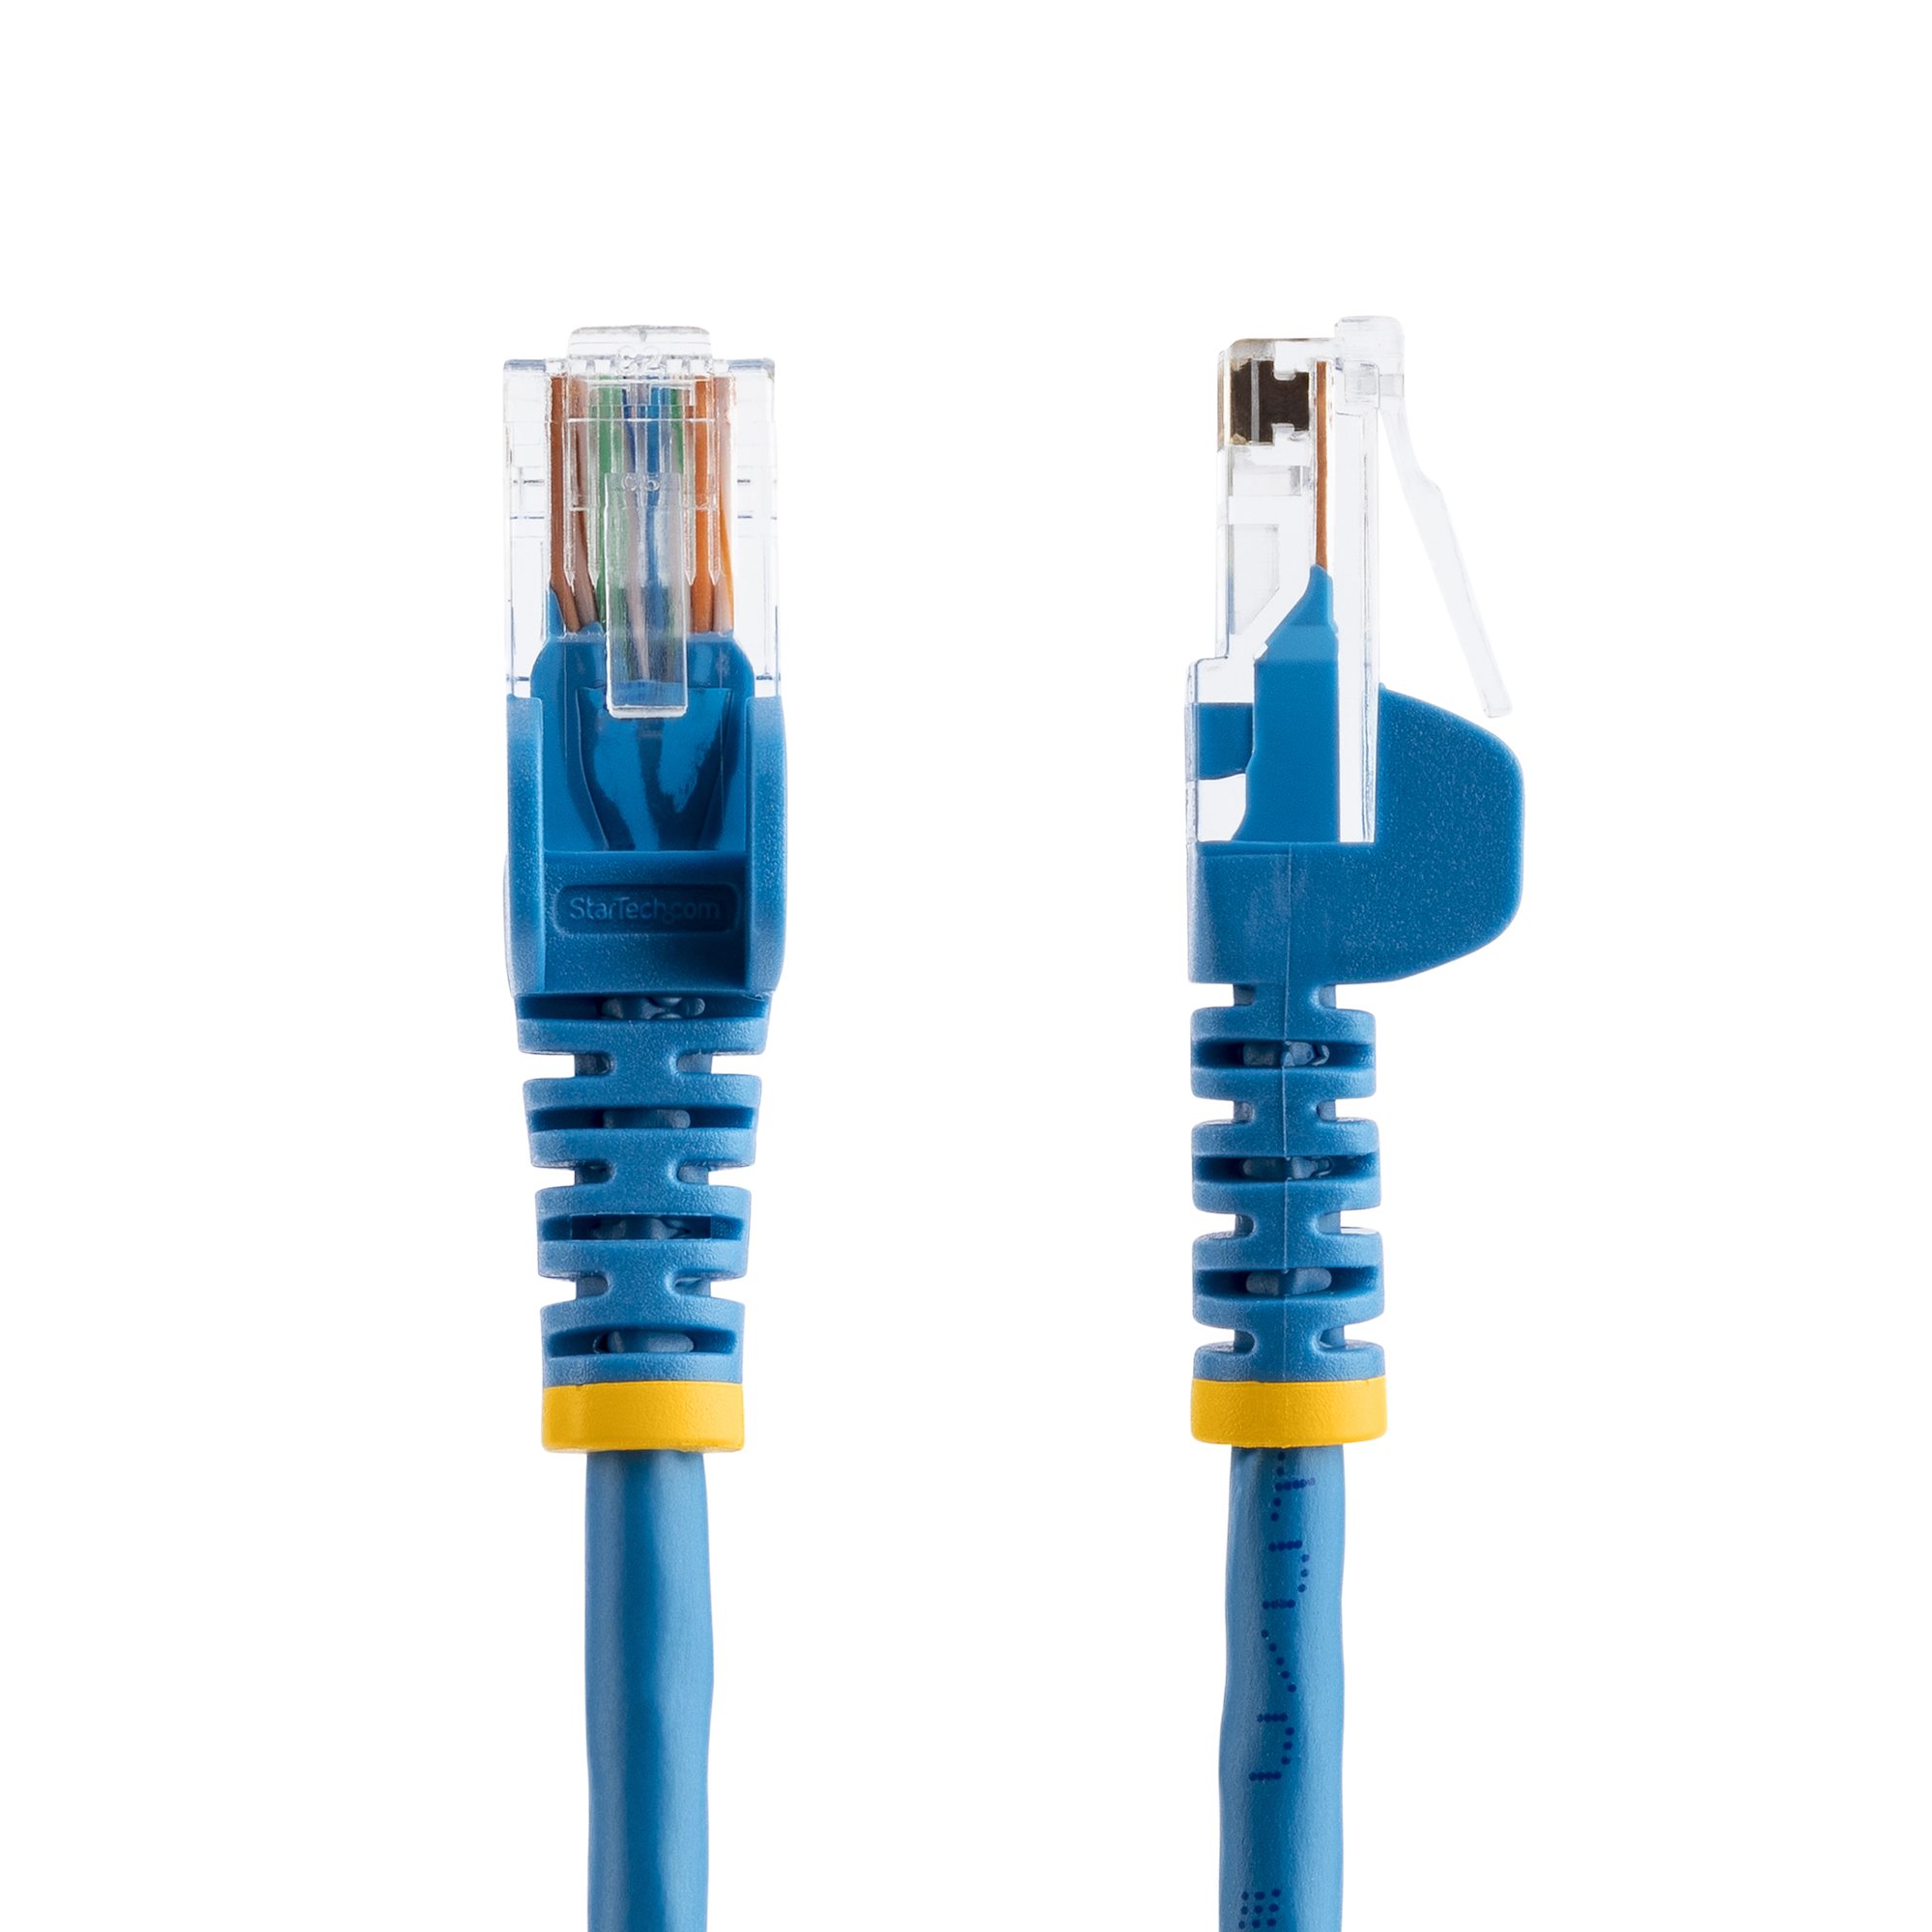 25ft Blue Snagless Cat5e UTP Patch Cable (RJ45PATCH25) - Cat 5e Cables, Cables